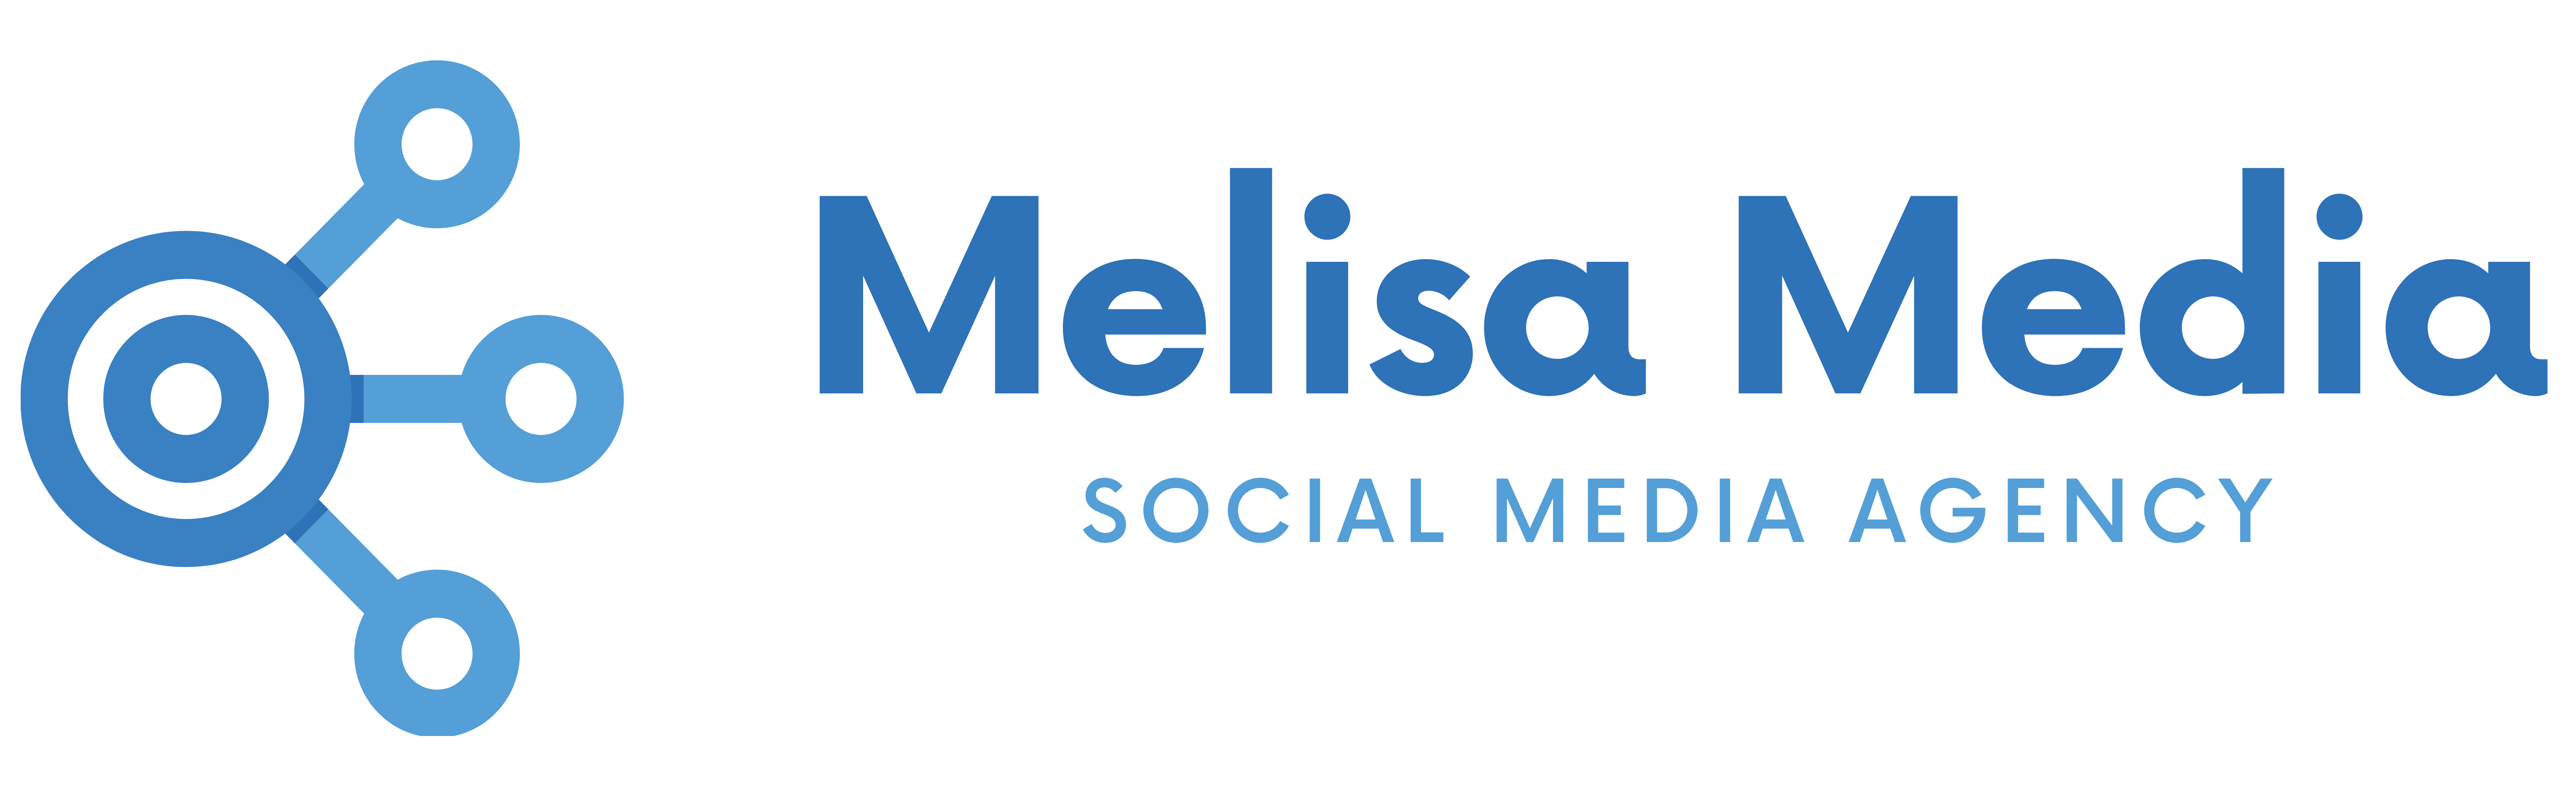 Melisa Media banner png